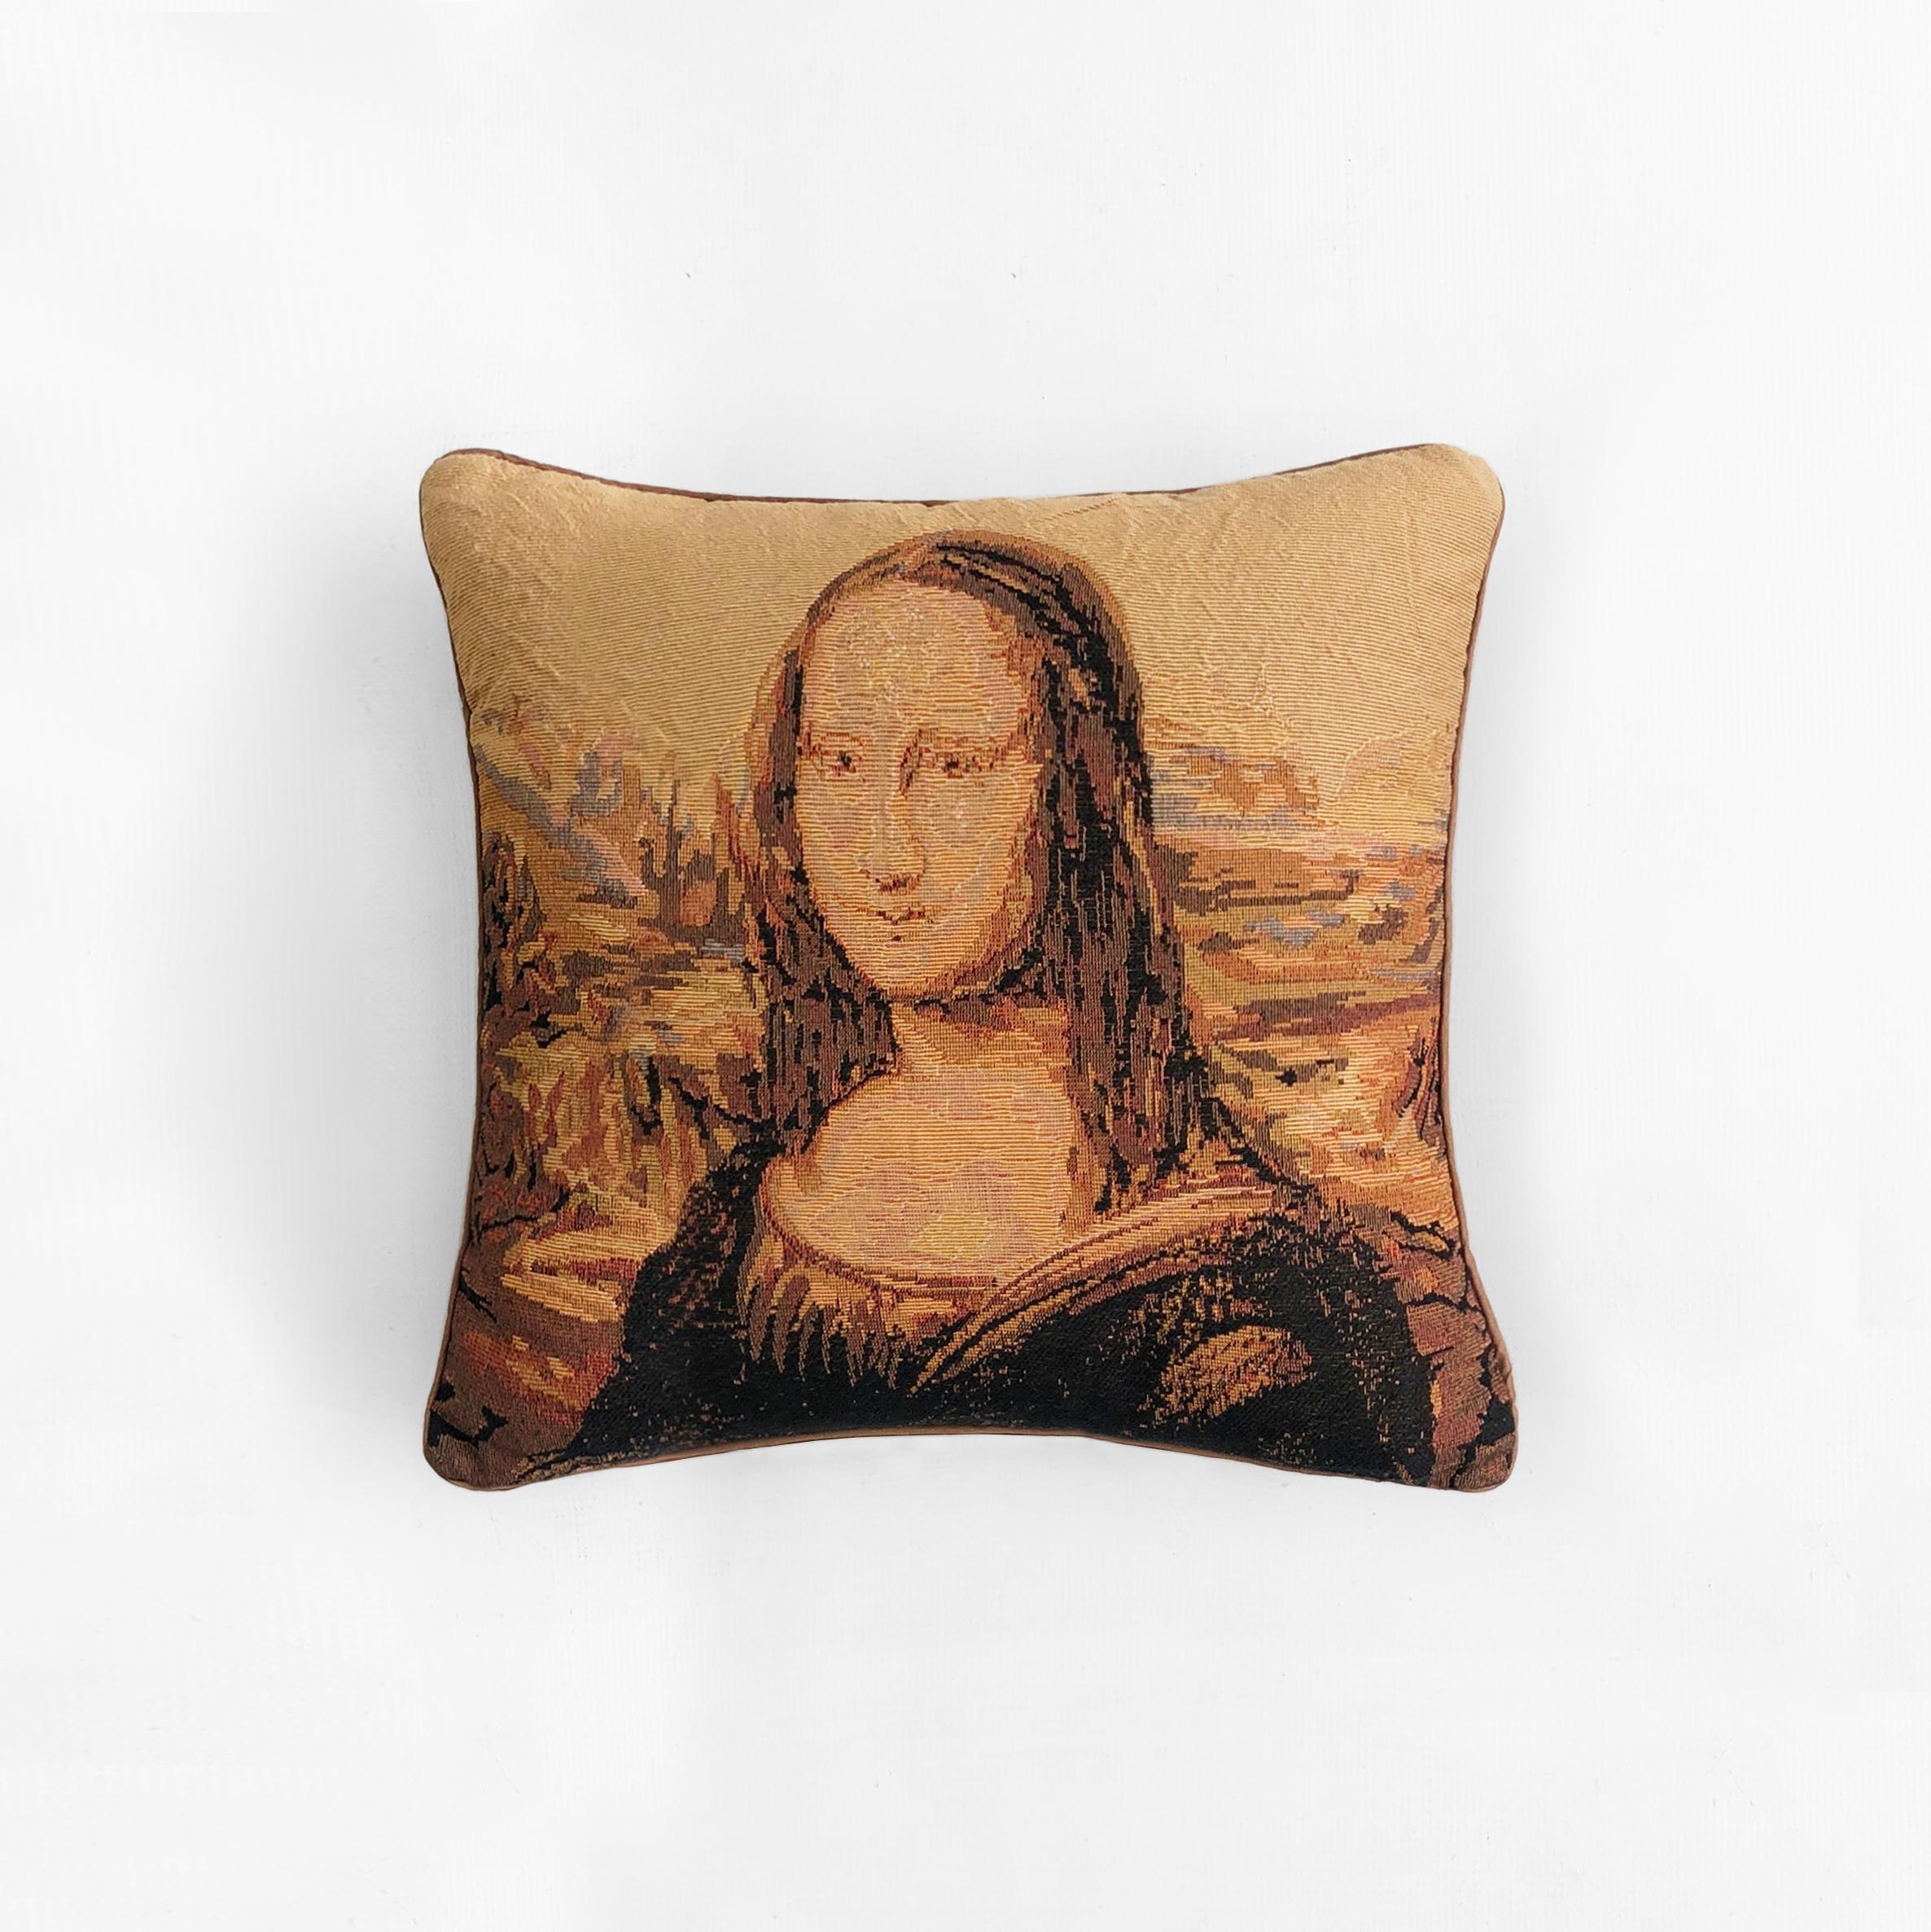 Die Mona Lisa ist wahrscheinlich das berühmteste Kunstwerk der Welt, und diese bequemen Kissen stellen das Meisterwerk von Leonardo da Vinci in warmen Gelb-, Braun- und Orangetönen aus einer Webart nach, die einen Kreuzstich imitiert.

Der